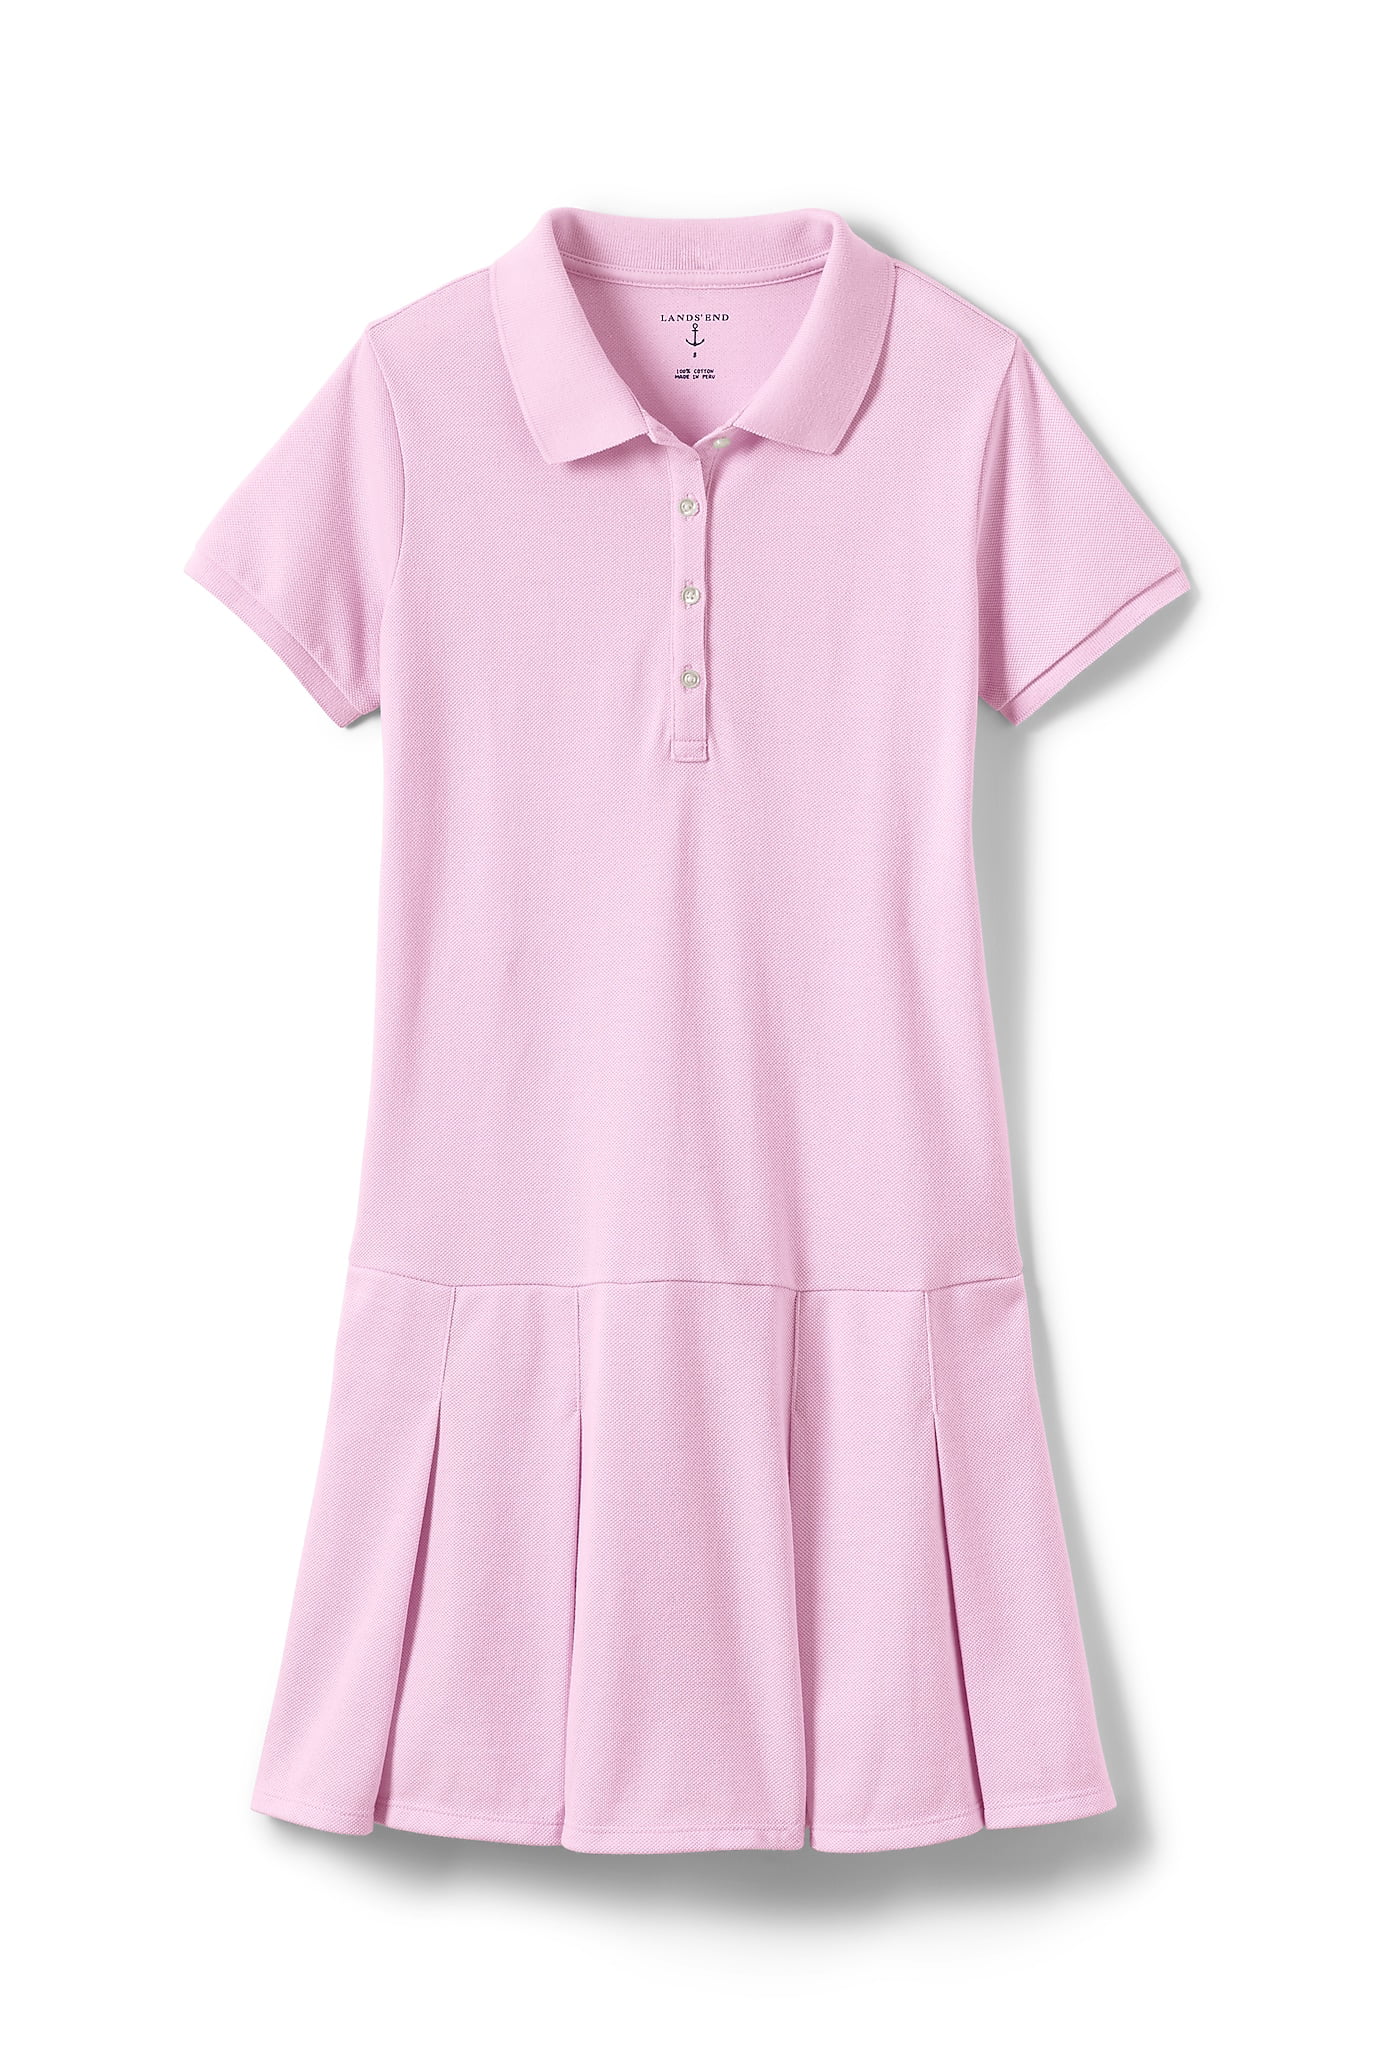 Lands End School Uniform Little Girls Short Sleeve Mesh Polo Dress